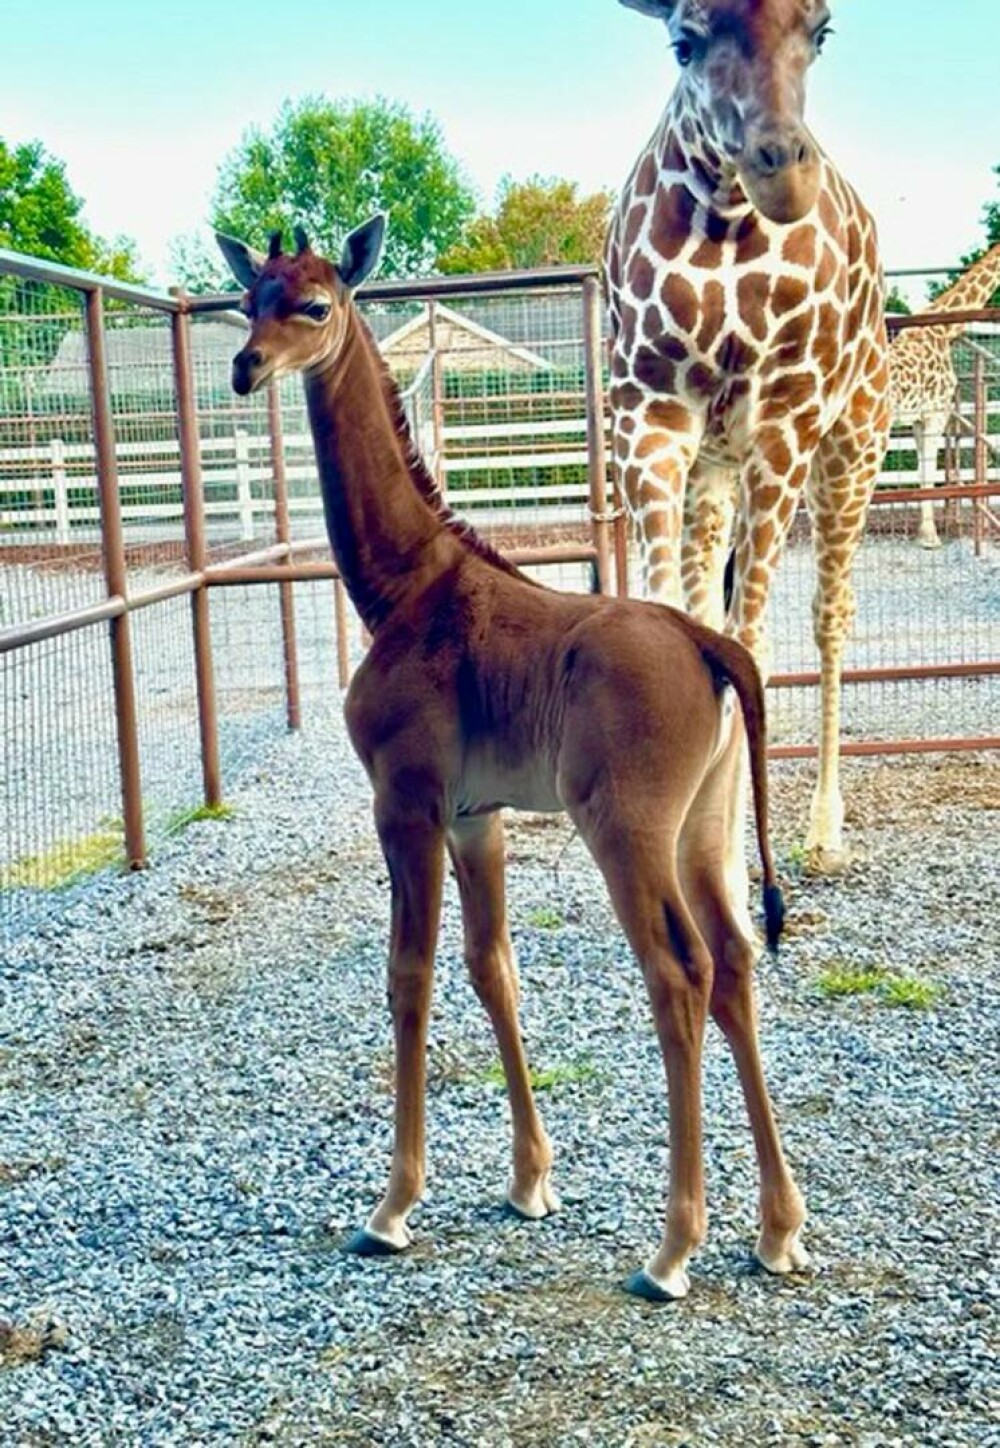 O girafă fără pete s-a născut într-o grădină zoologică din SUA. Ar putea fi unică în lume - Imaginea 2